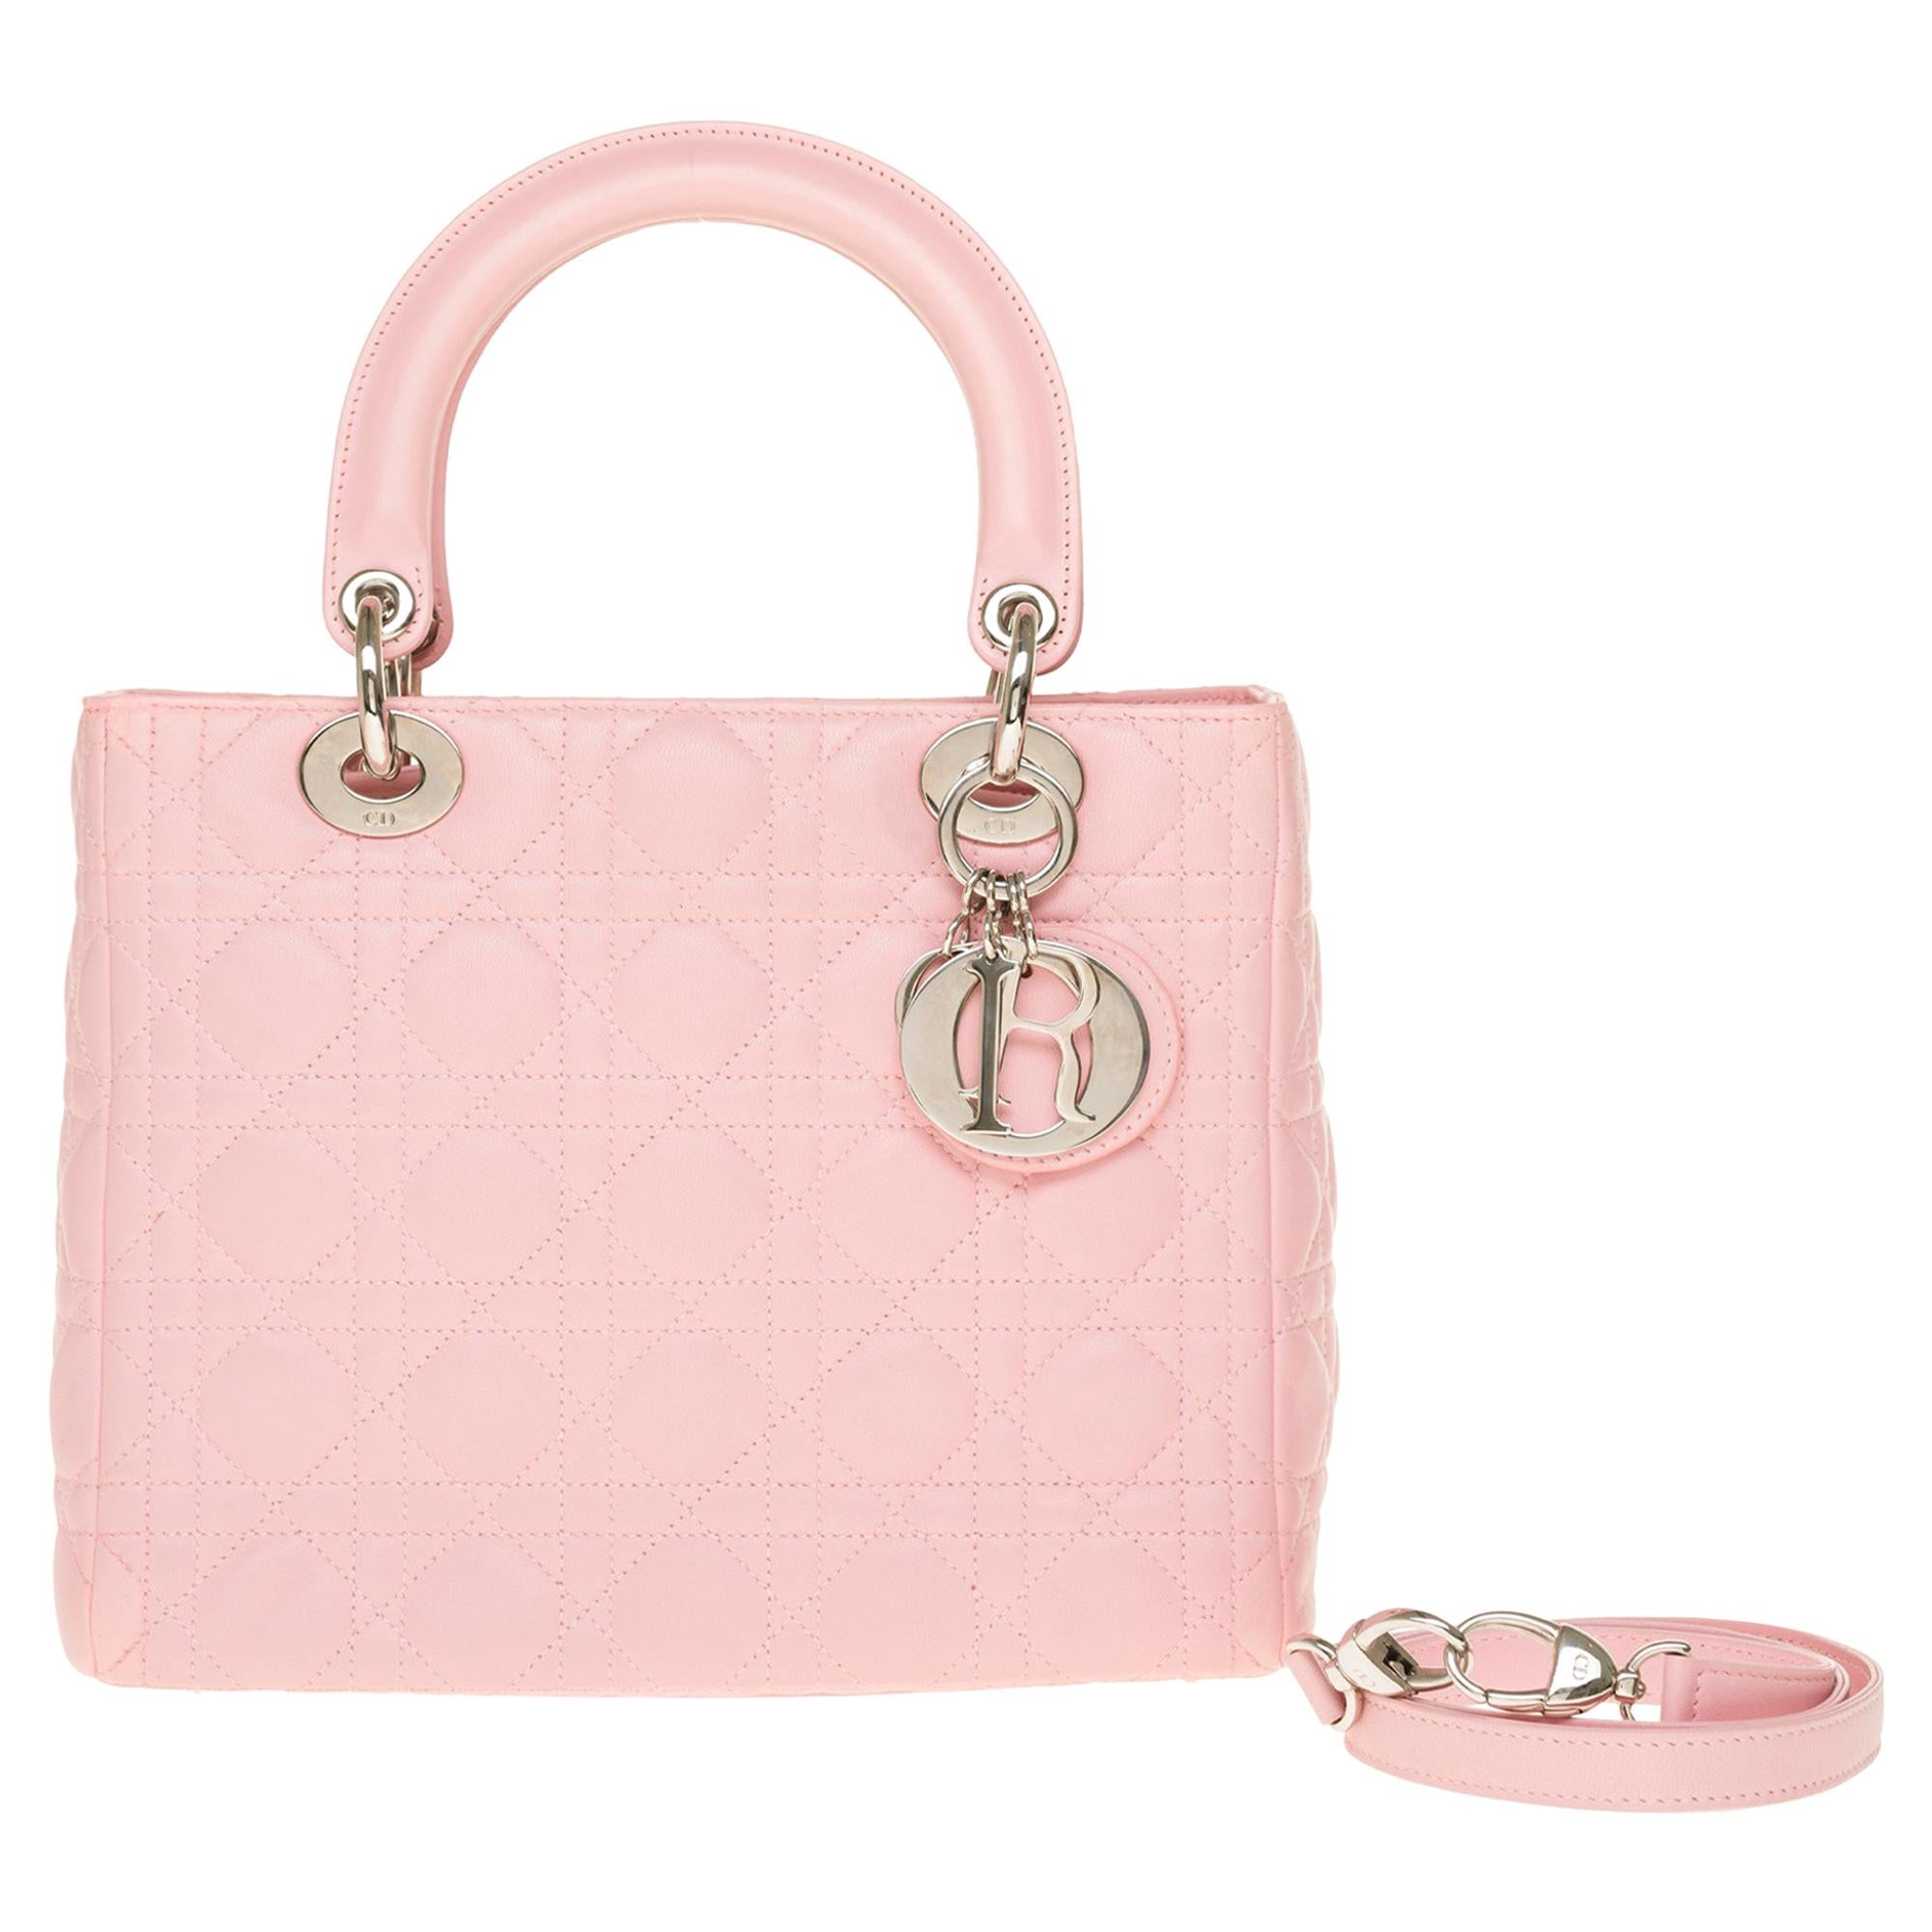  Christian Dior Lady Dior Medium size handbag in Pink cannage leather, SHW